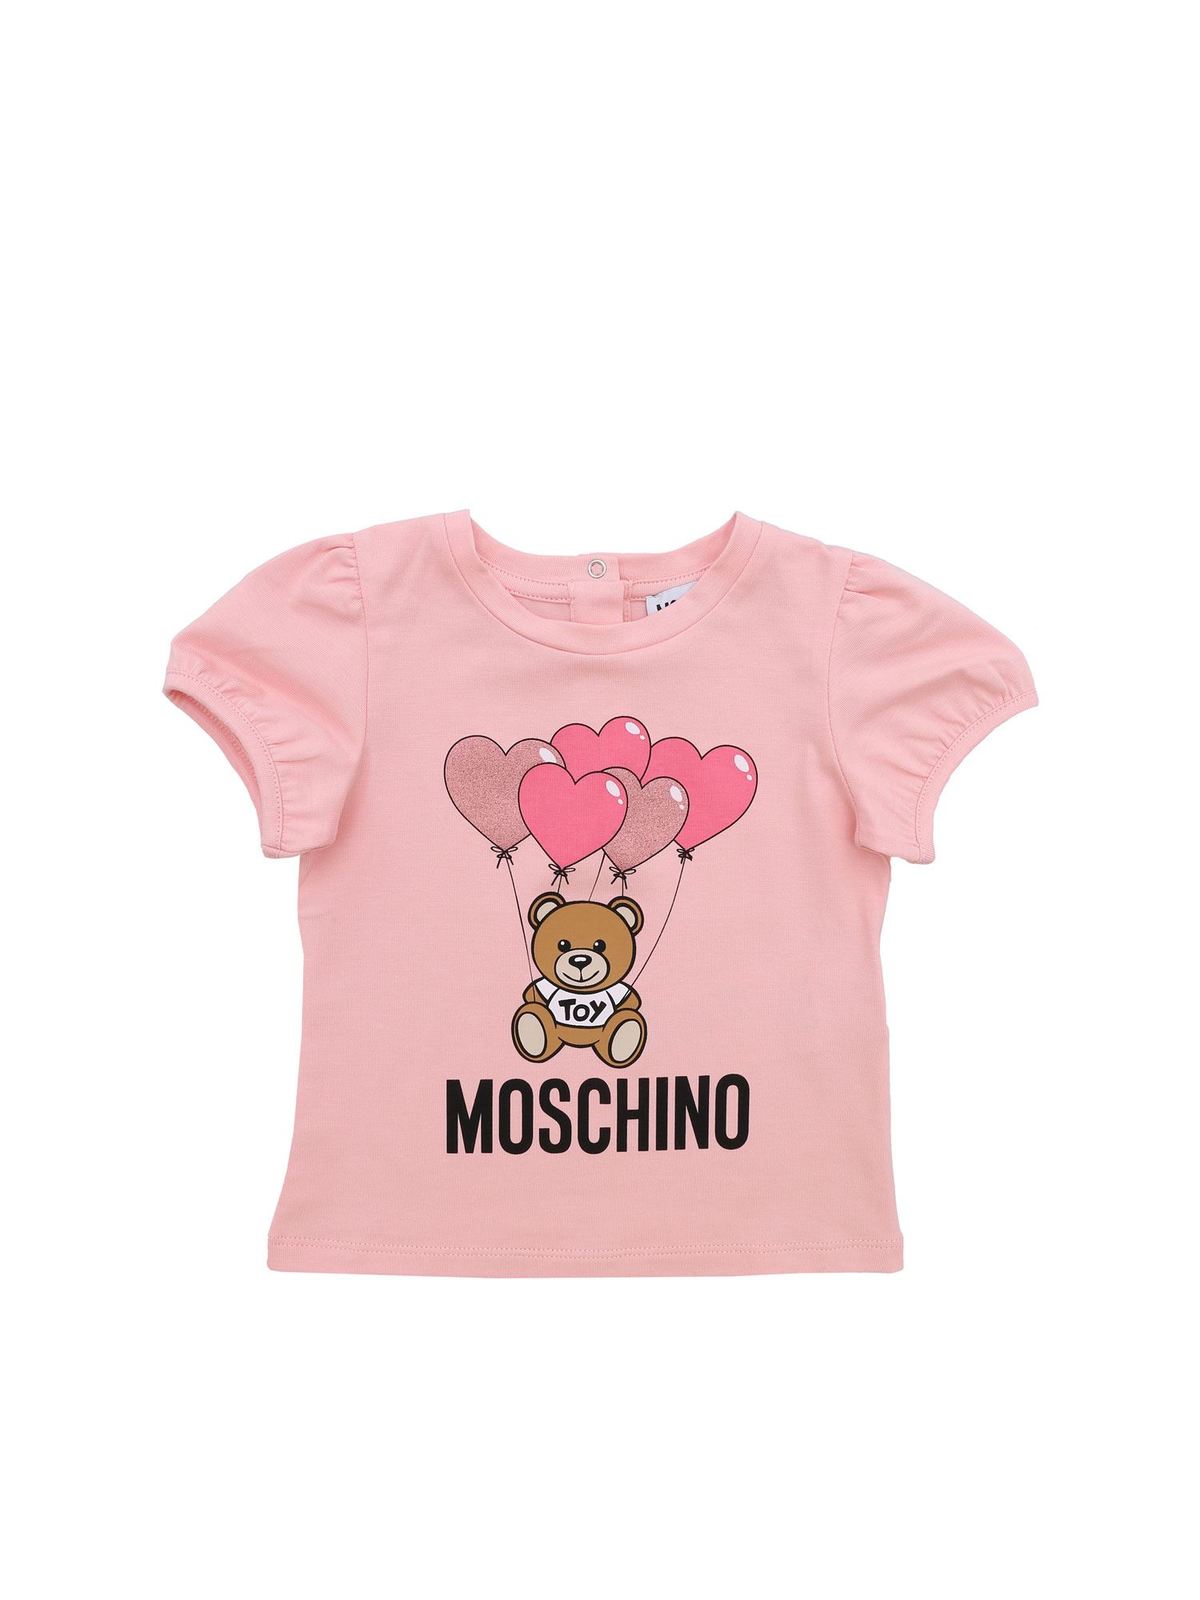 pink moschino shirt